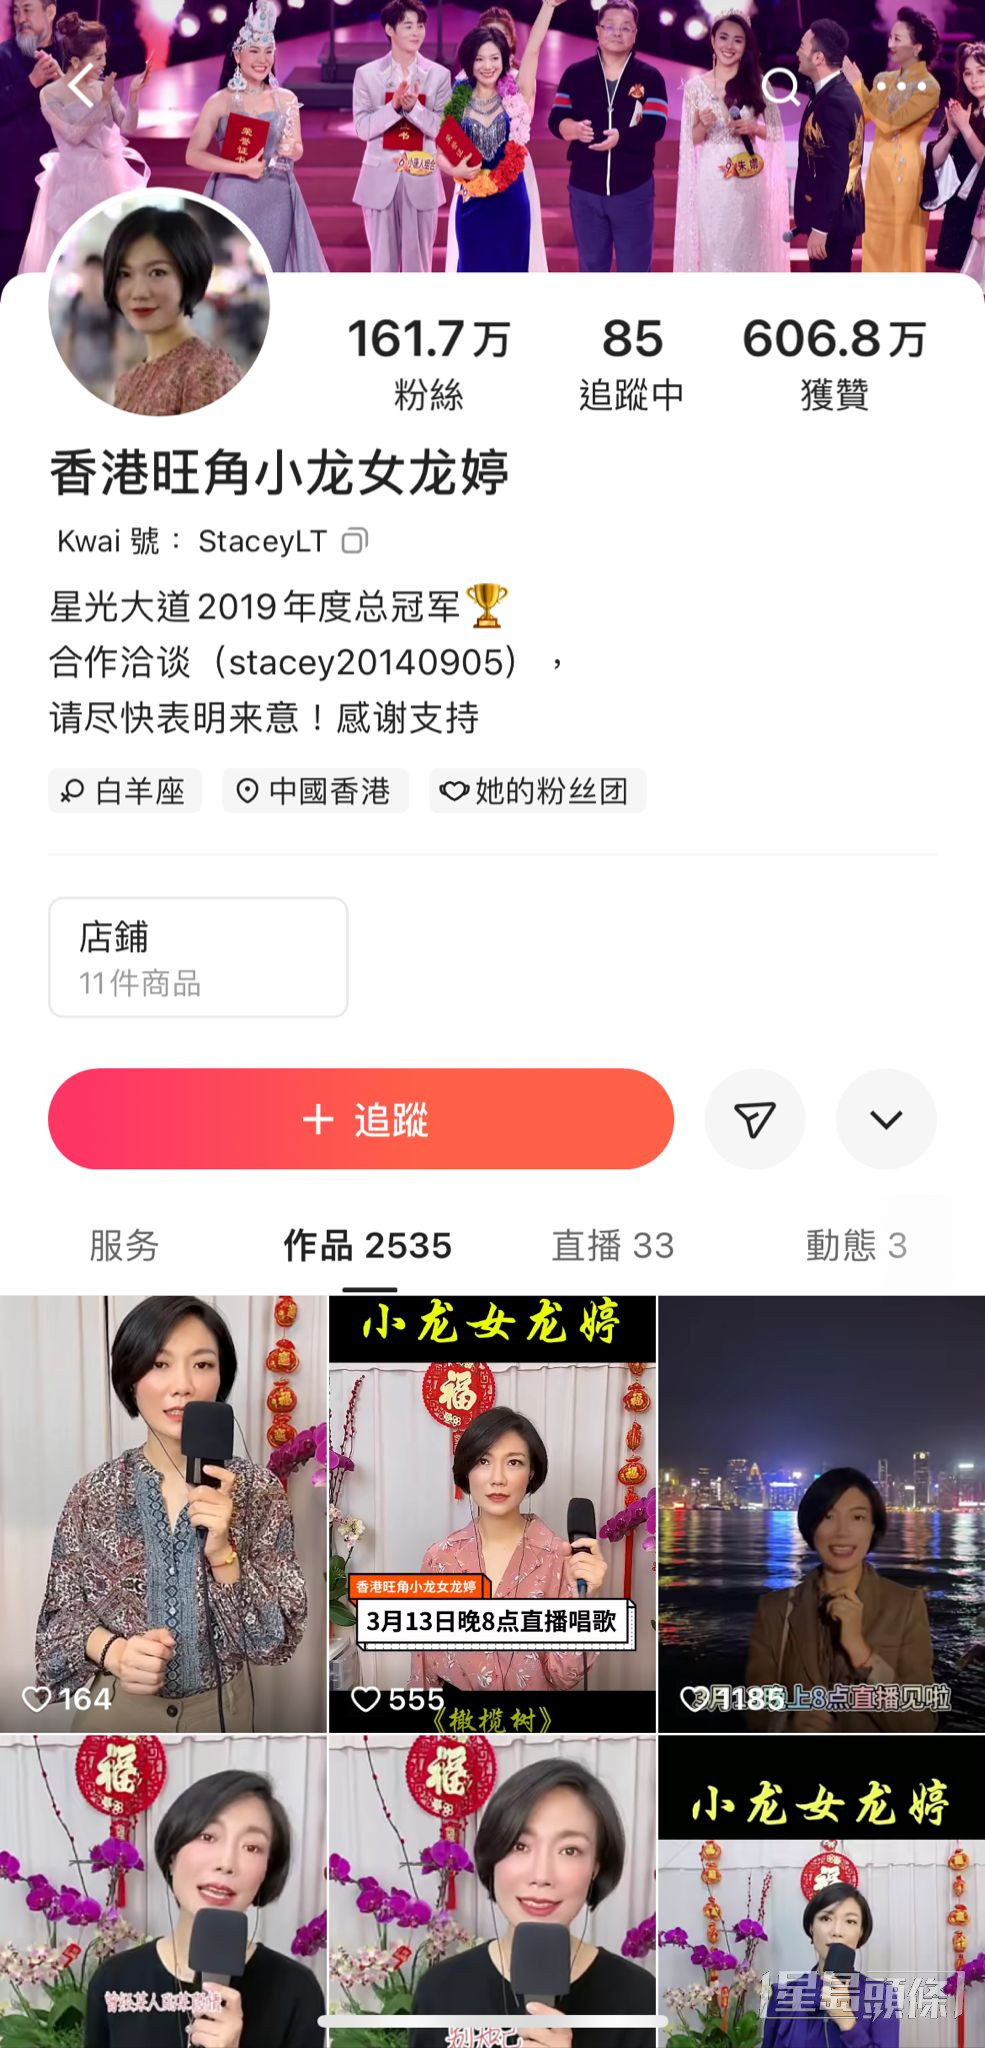 龙婷演出的视频在网上广传，以邓丽君腔见称的她火速窜红，其内地视频平台至今累积超过161.7万粉丝。